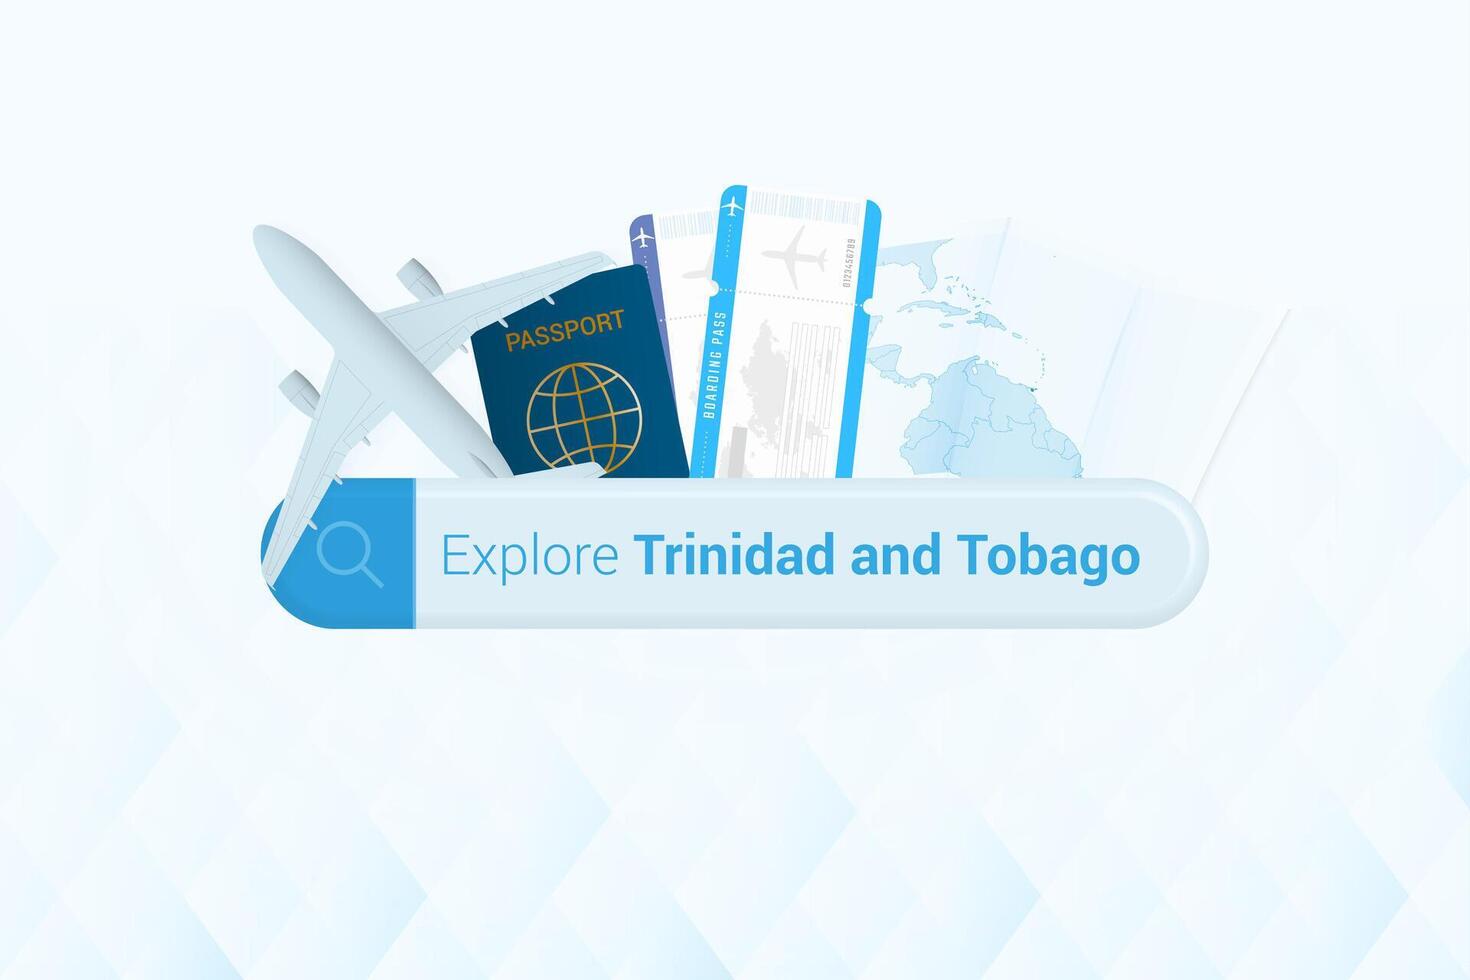 recherche des billets à Trinidad et Tobago ou Voyage destination dans Trinidad et tobago. recherche bar avec avion, passeport, embarquement passer, des billets et carte. vecteur